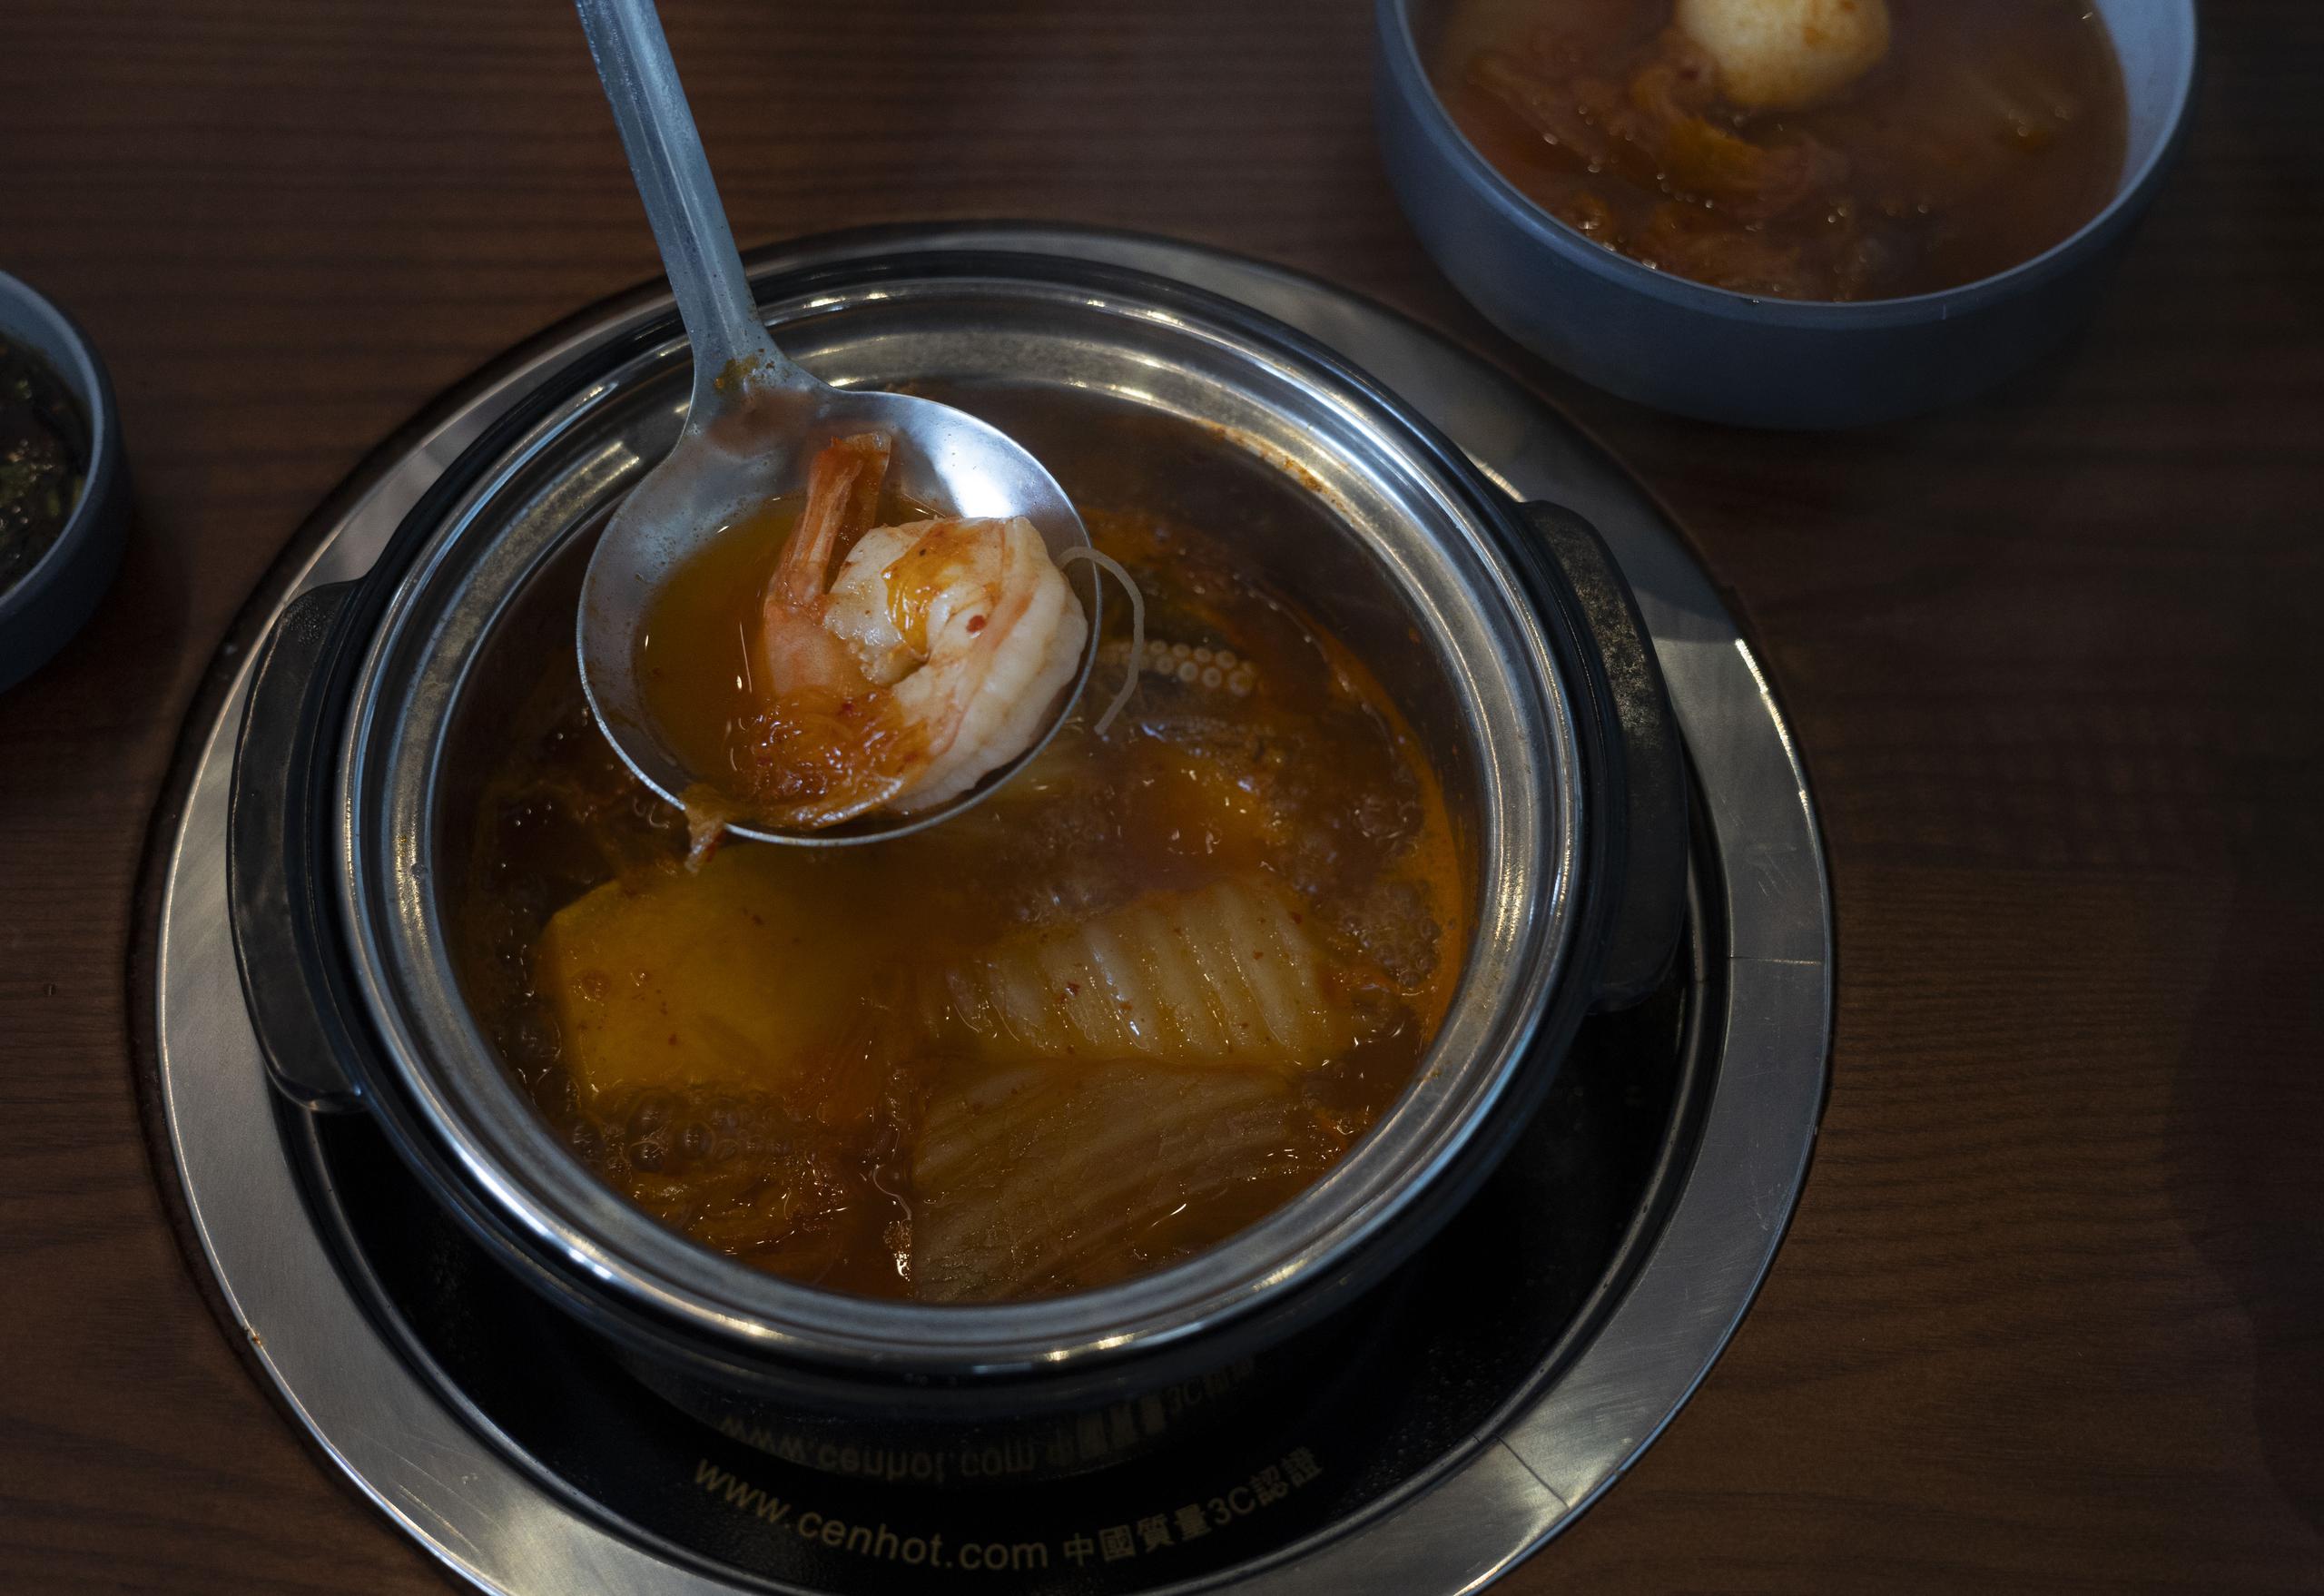 Los "hot pots" incluyen las tradiciones taiwanesa, china, coreana y japonesa, y variedades vegetarianas, carnes y proteínas marinas.

